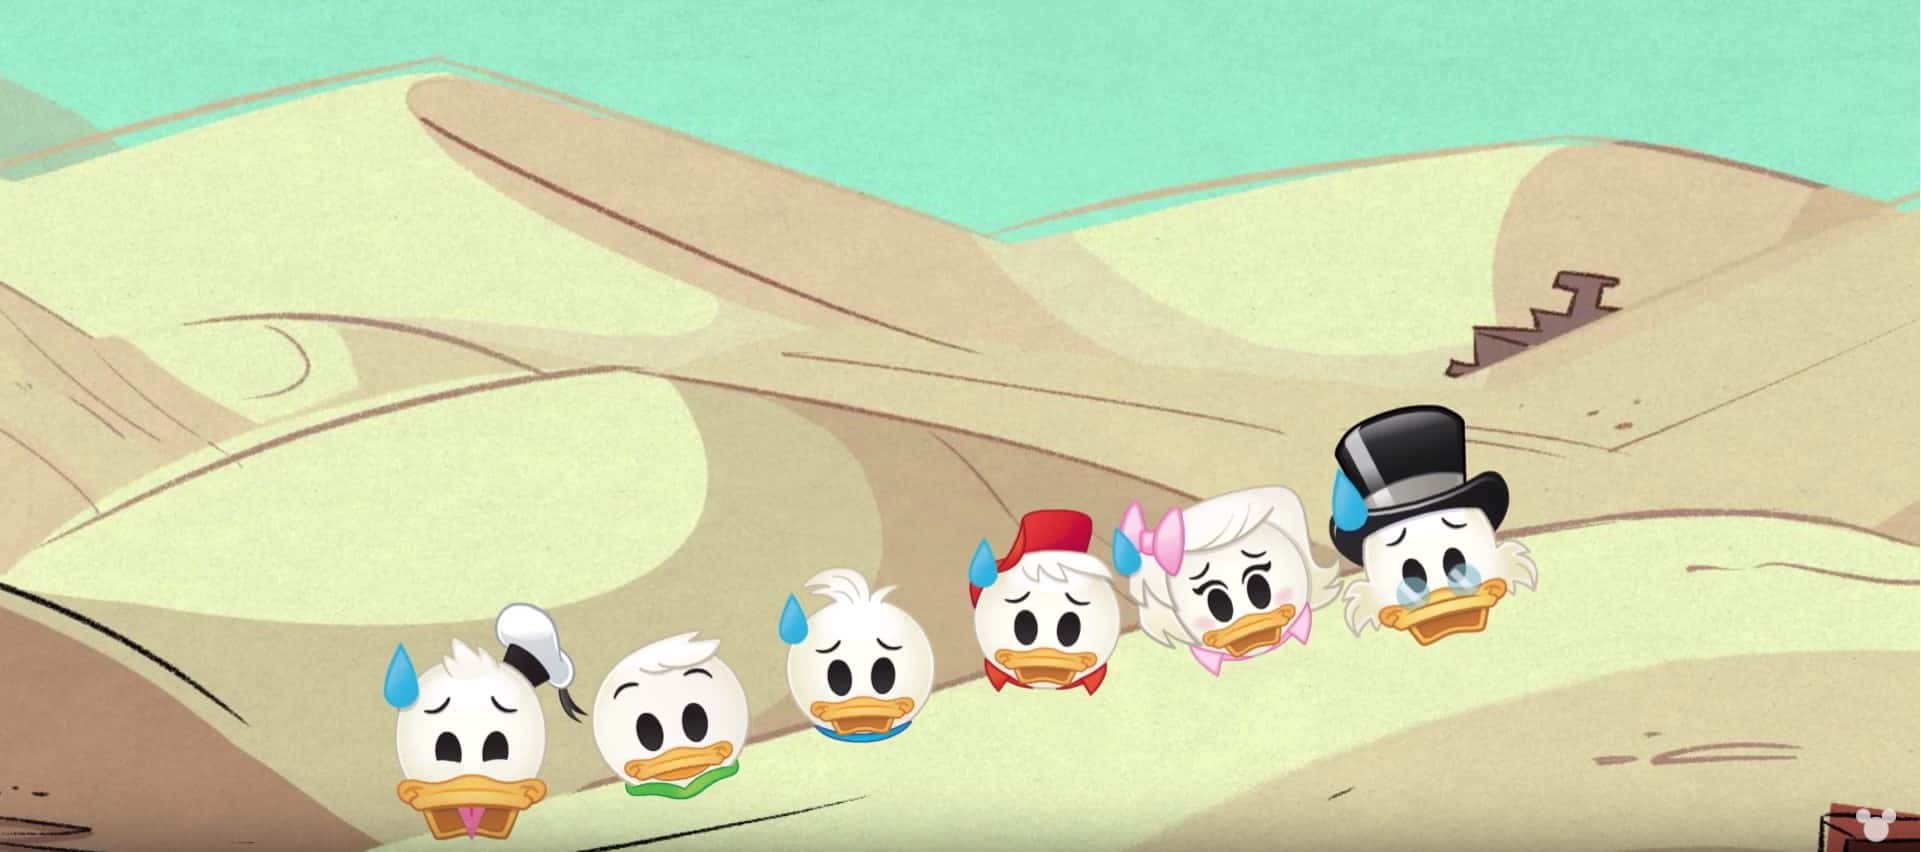 ducktales as told by emoji